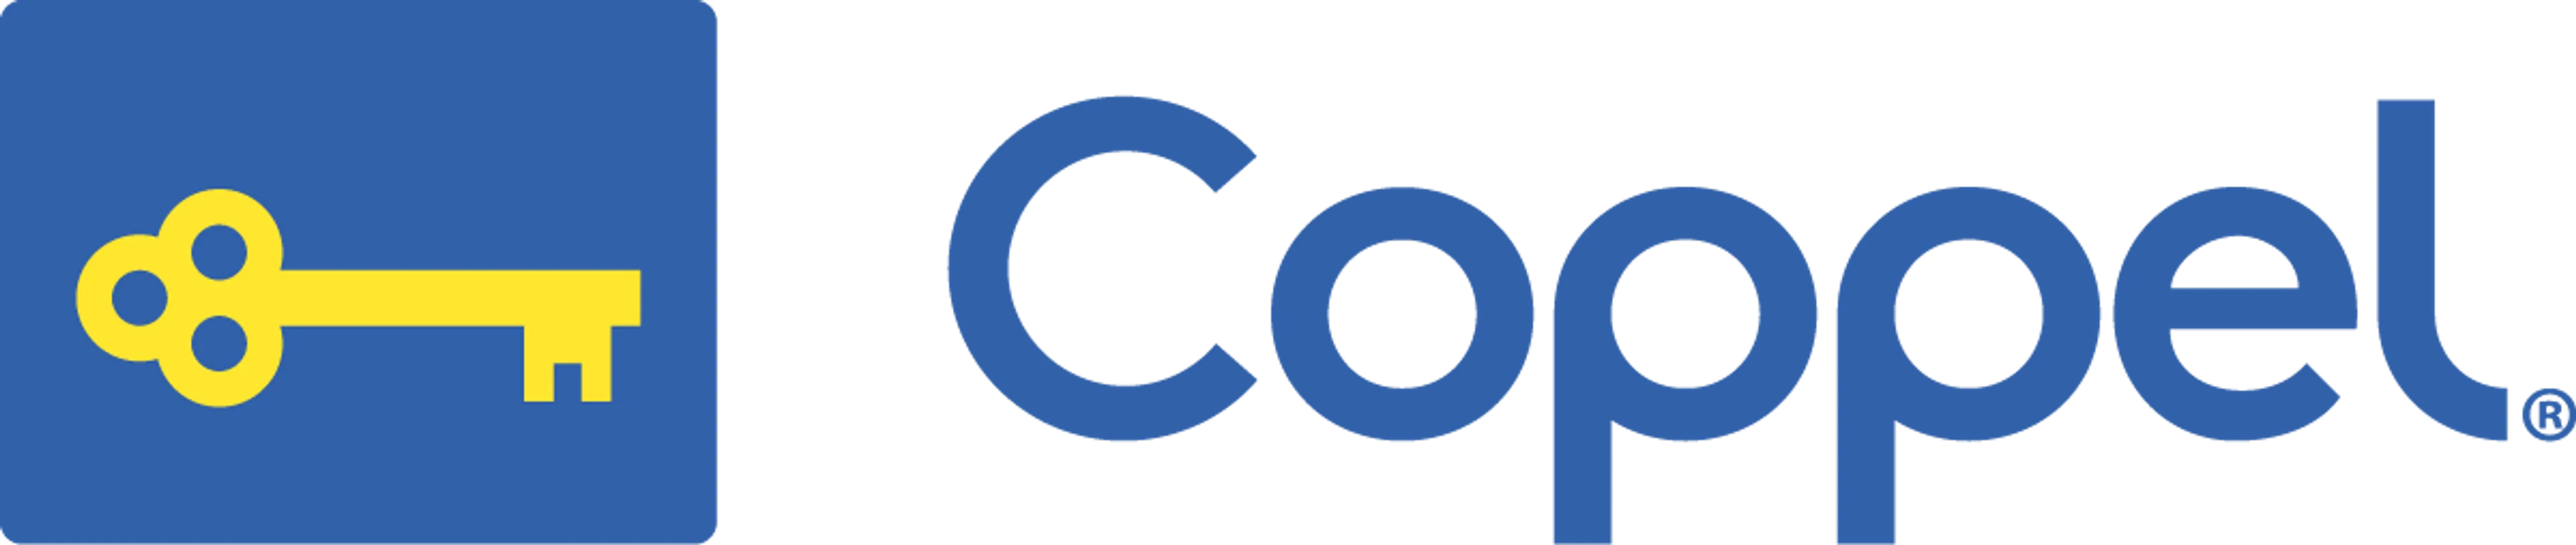 COPPEL logo